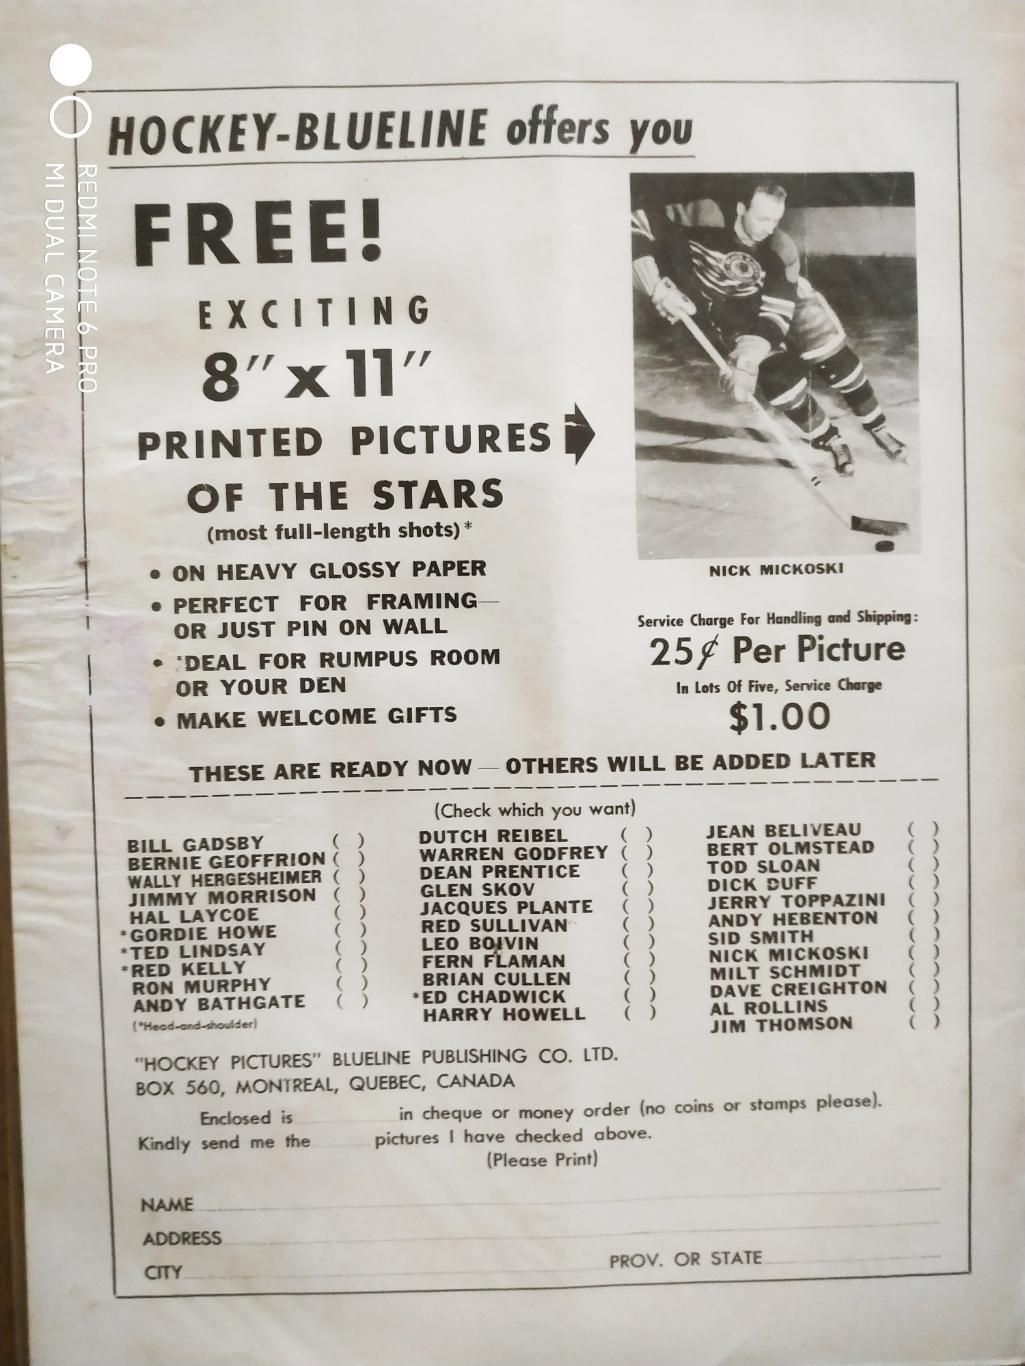 ЖУРНАЛ ЕЖЕМЕСЯЧНИК НХЛ NHL 1957 APRIL THE HOCKEY MONTHLY BLUELINE 1